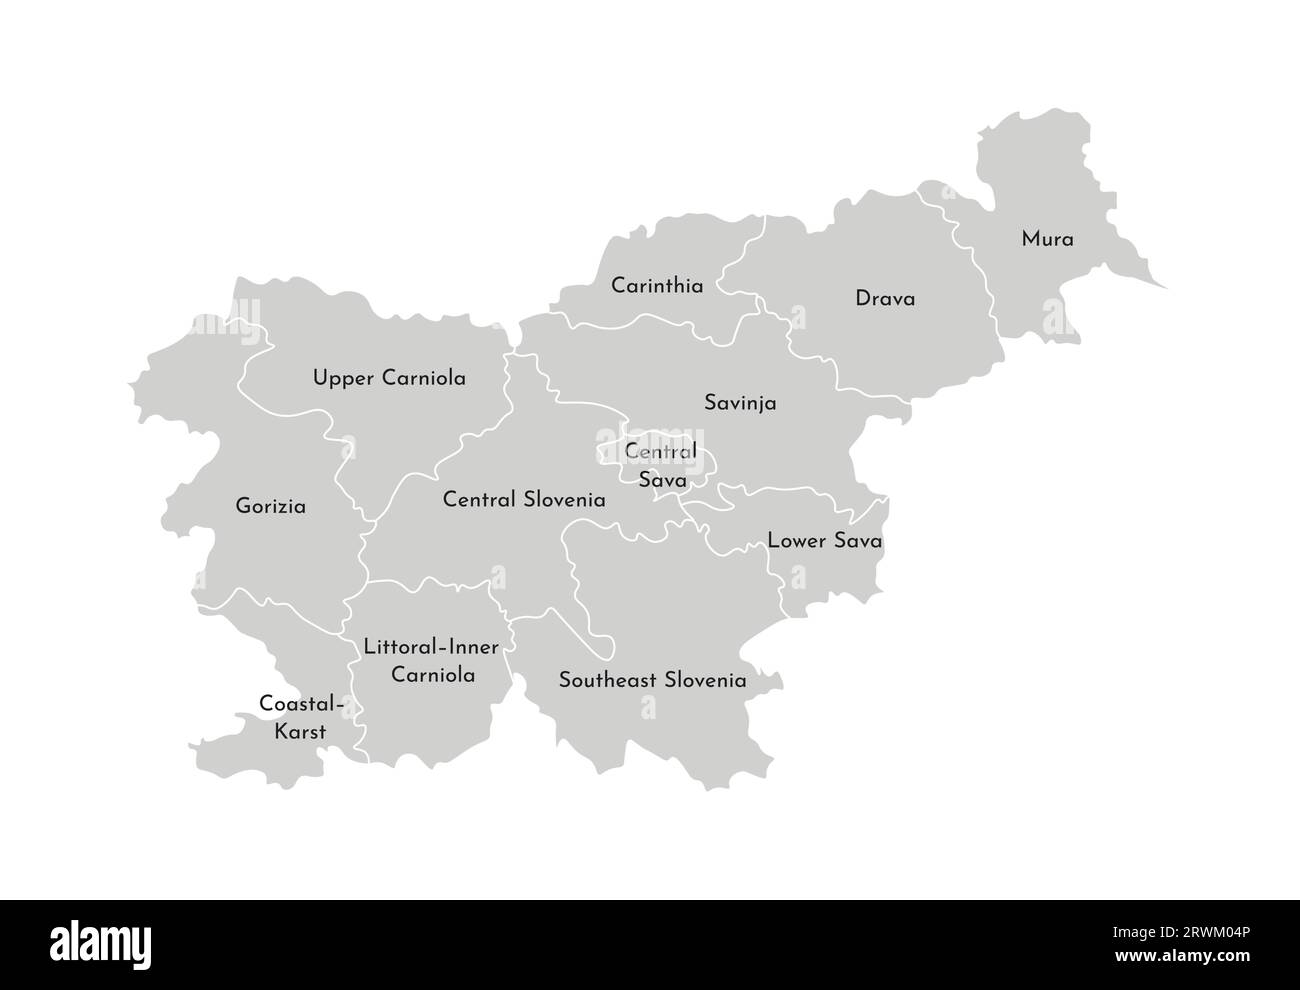 Vektorisolierte Darstellung der vereinfachten Verwaltungskarte Sloweniens. Grenzen und Namen der Provinzen (Regionen). Graue Silhouetten. Weiße Omelettes Stock Vektor